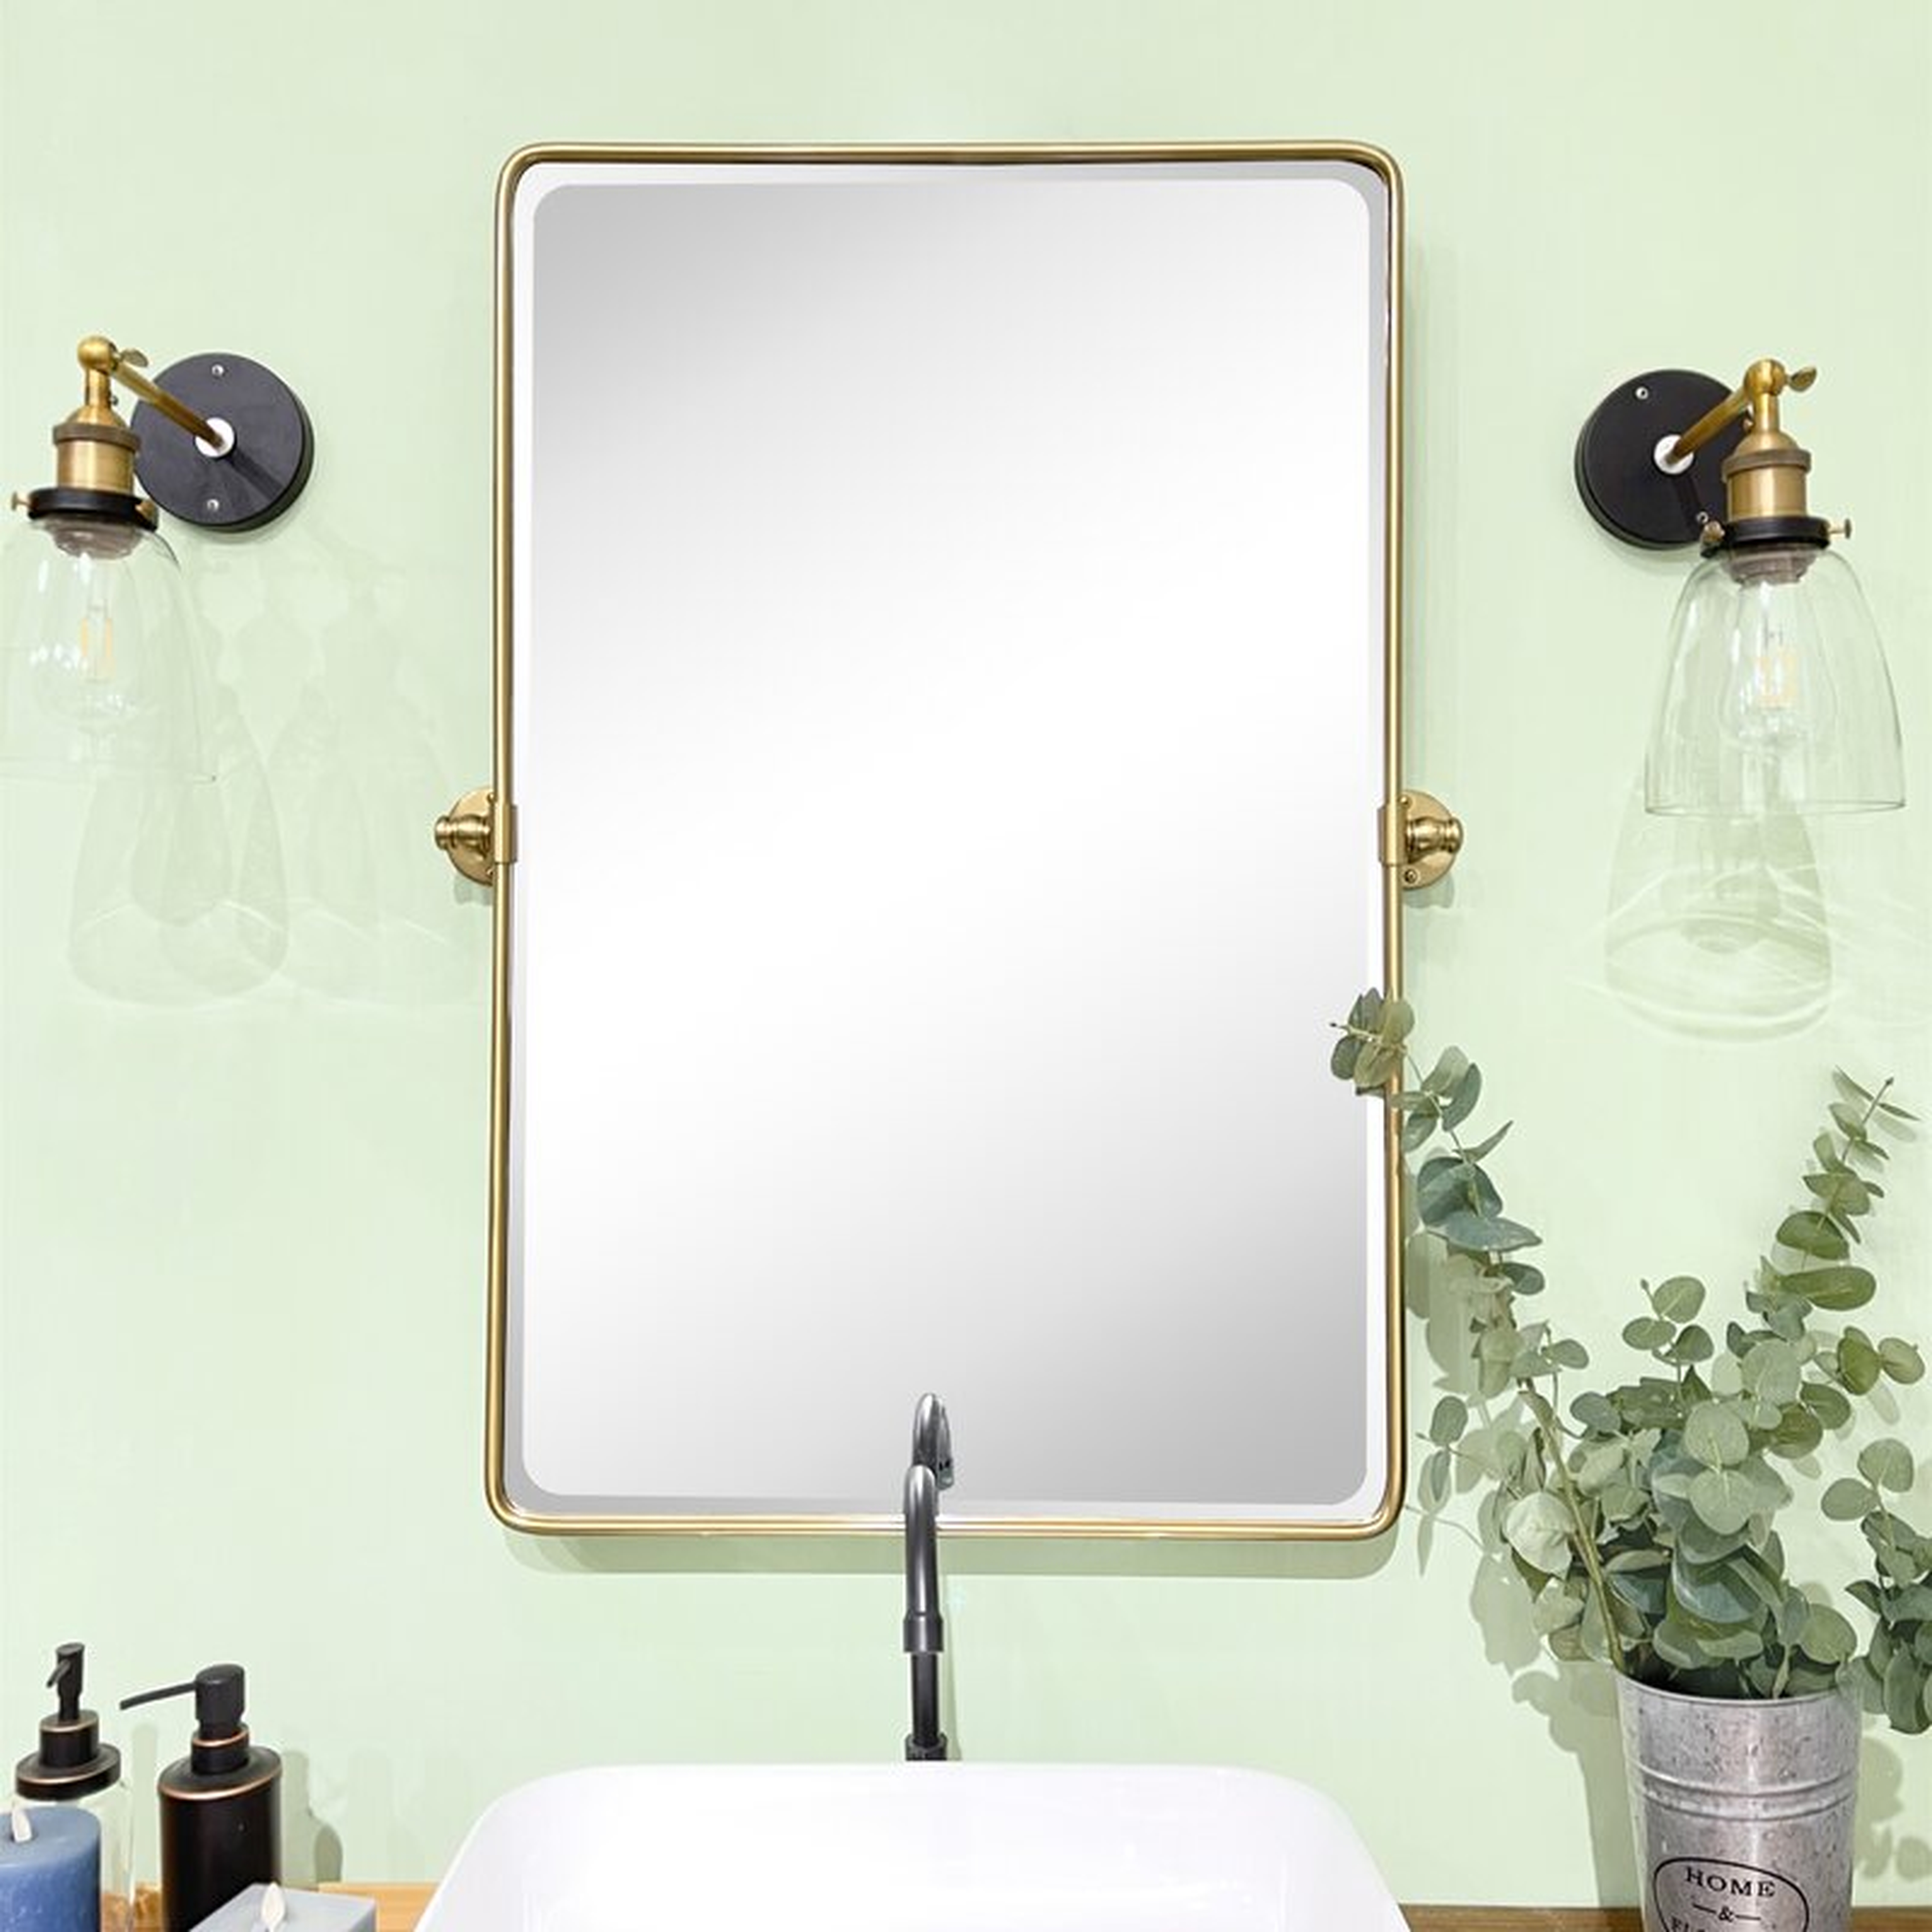 Woodvale Metal Framed Wall Mounted Bathroom / Vanity Mirror - Wayfair